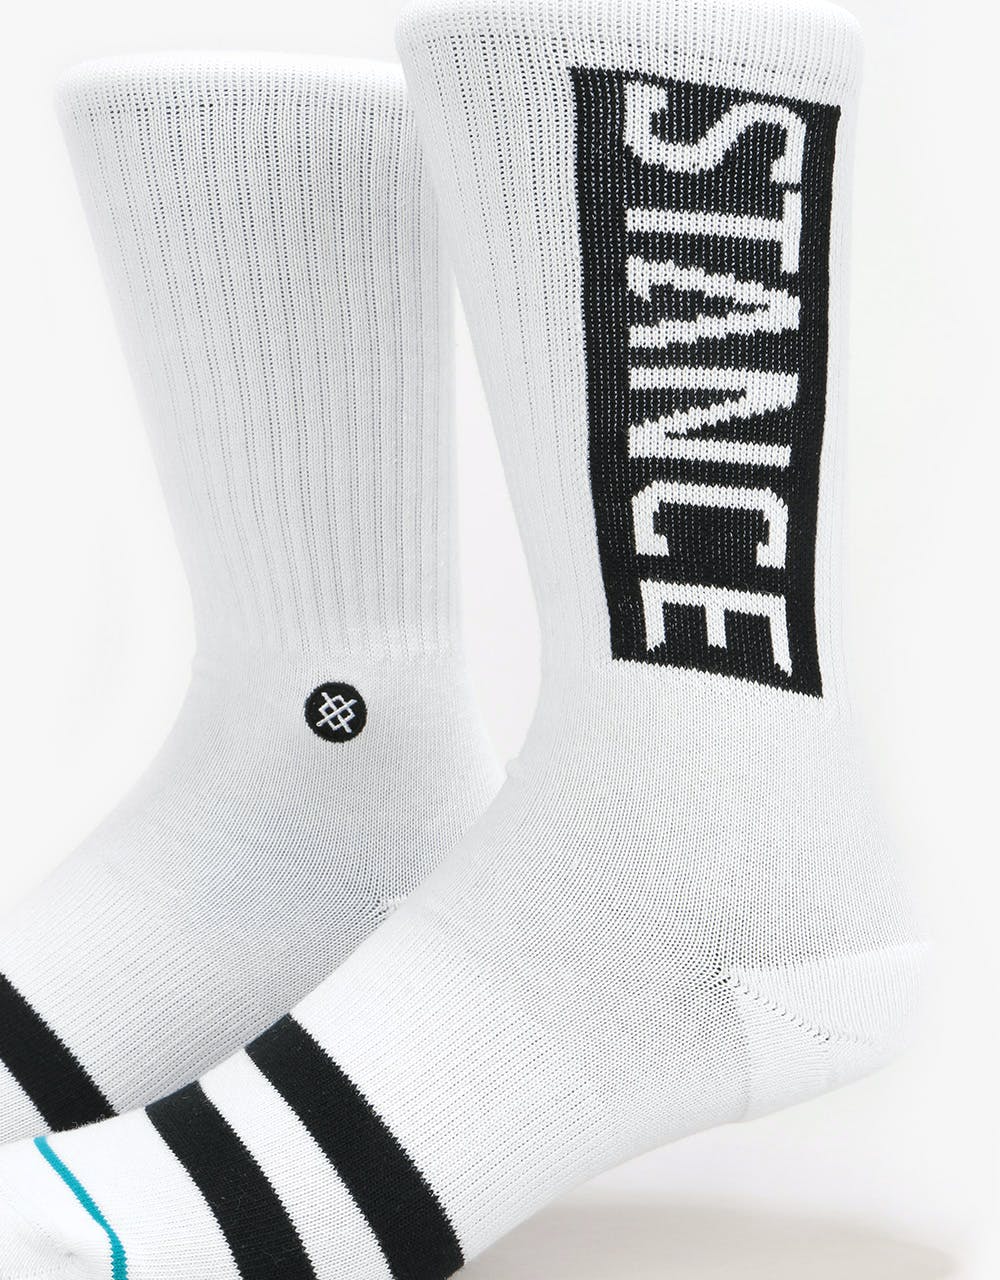 Stance OG Classic Crew Socks - White